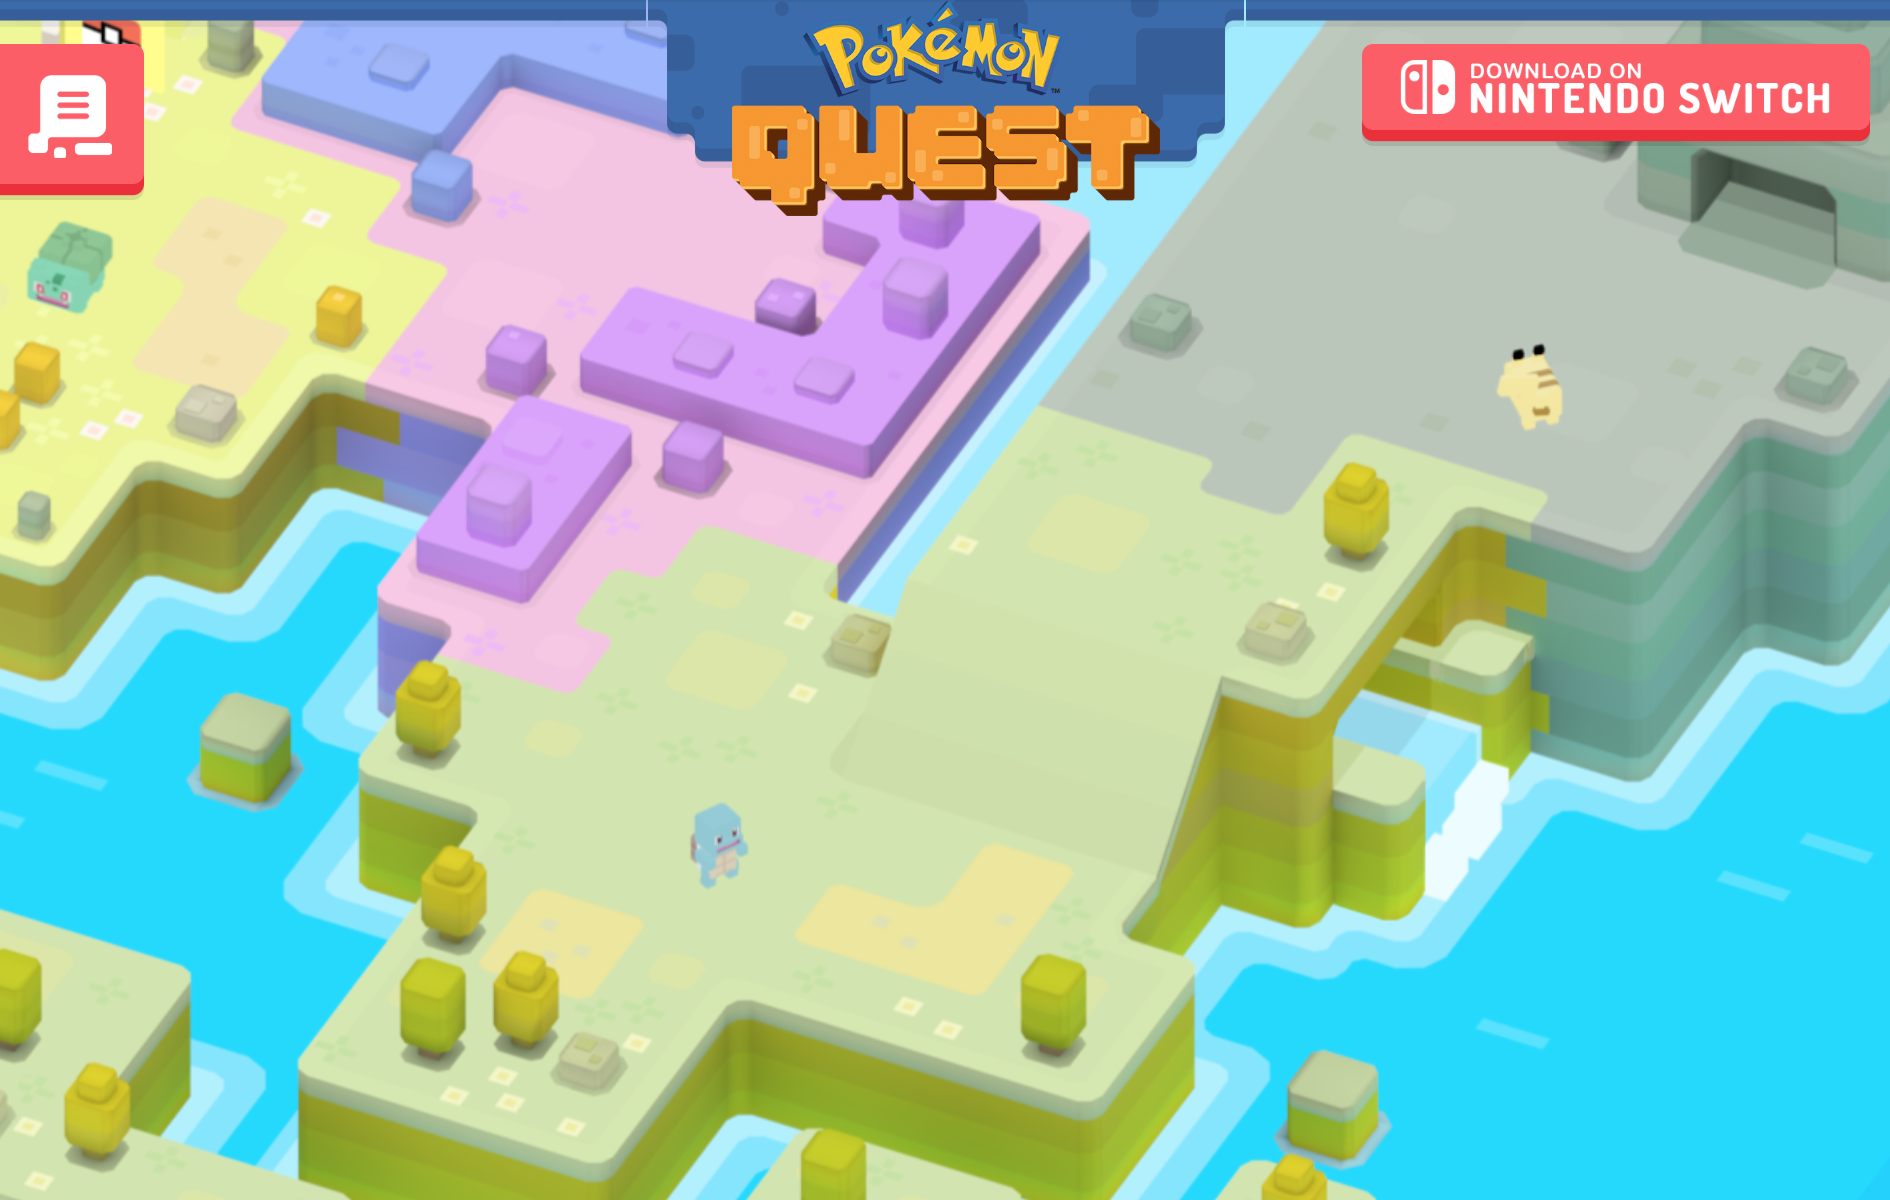 Pokémon Quest on the App Store